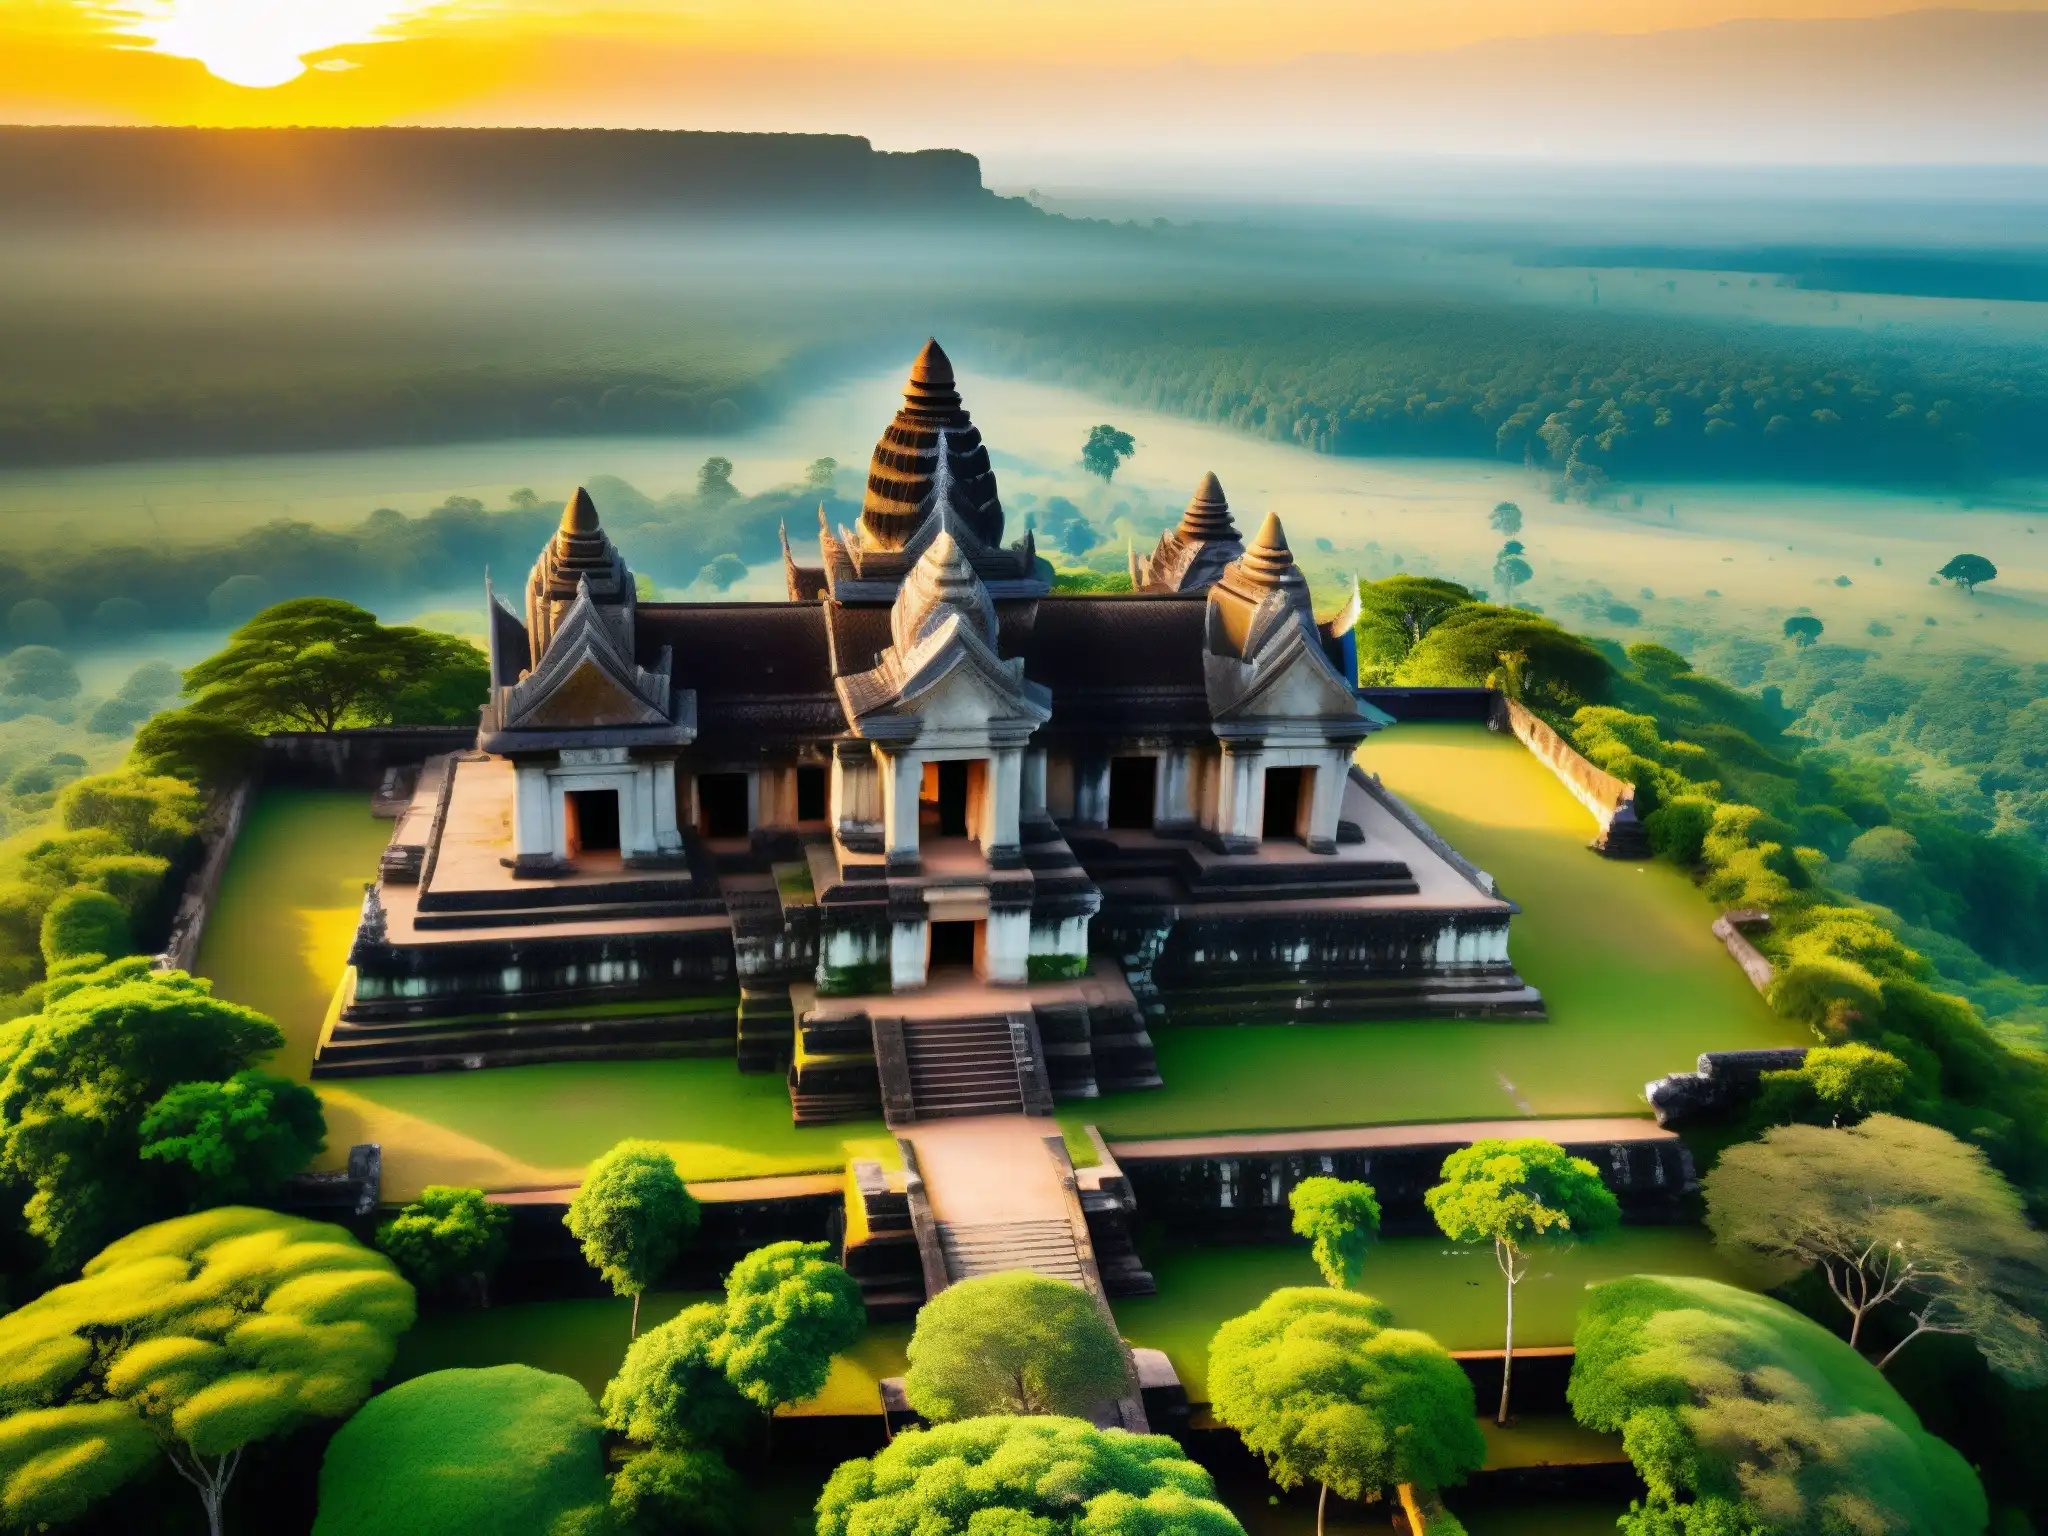 Vista aérea impresionante del Templo Preah Vihear con leyendas, maldiciones y su entorno misterioso y encantador